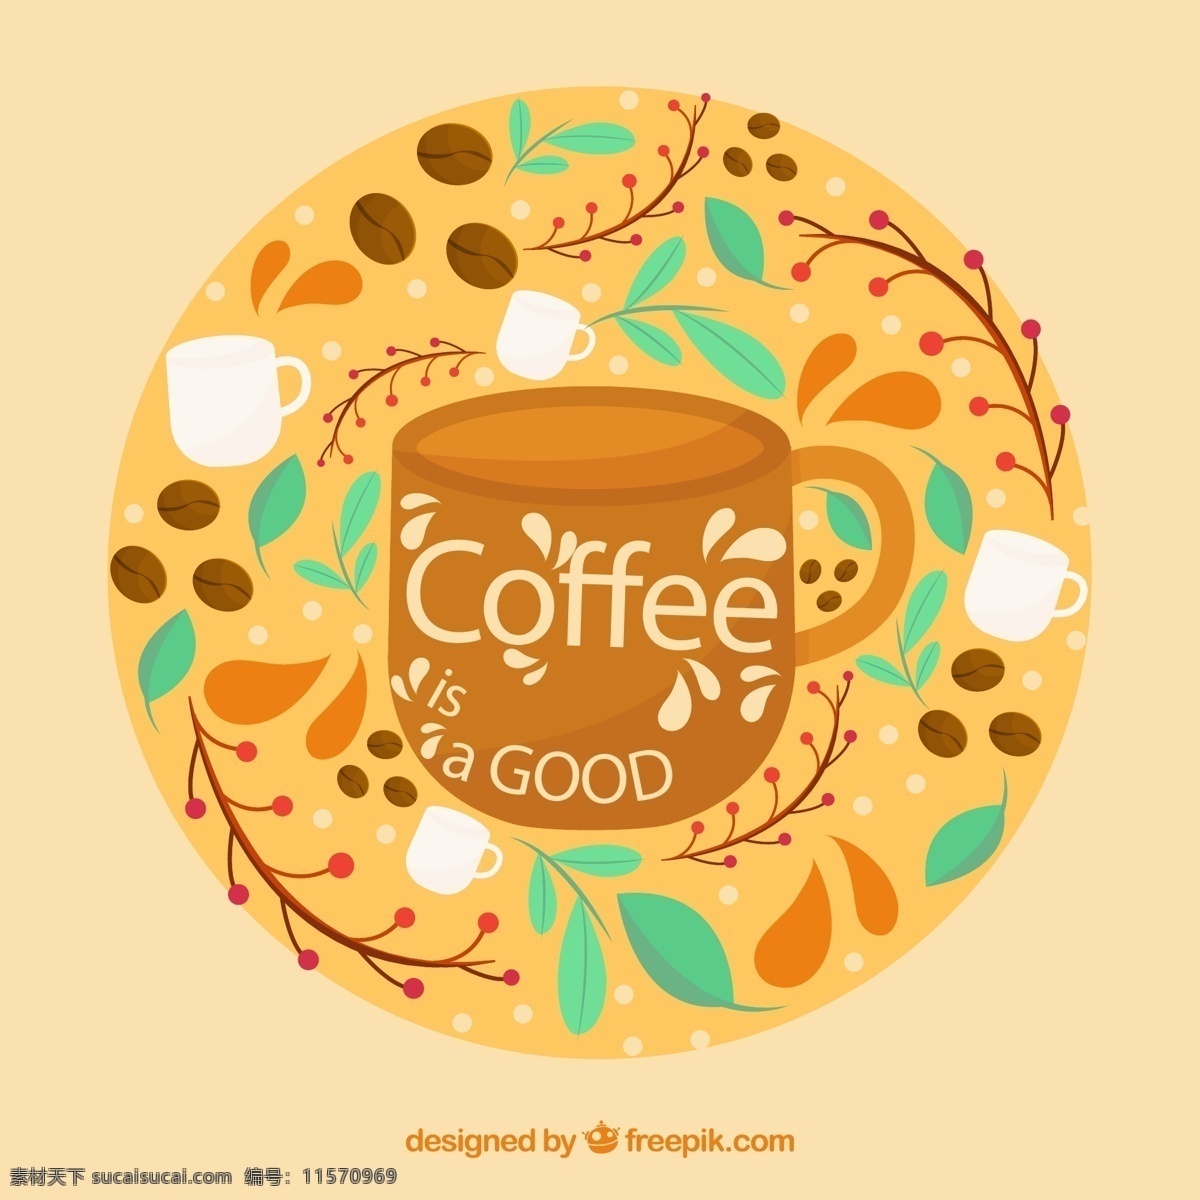 彩绘 花纹 咖啡 树叶 咖啡豆 矢量图 矢量 高清图片